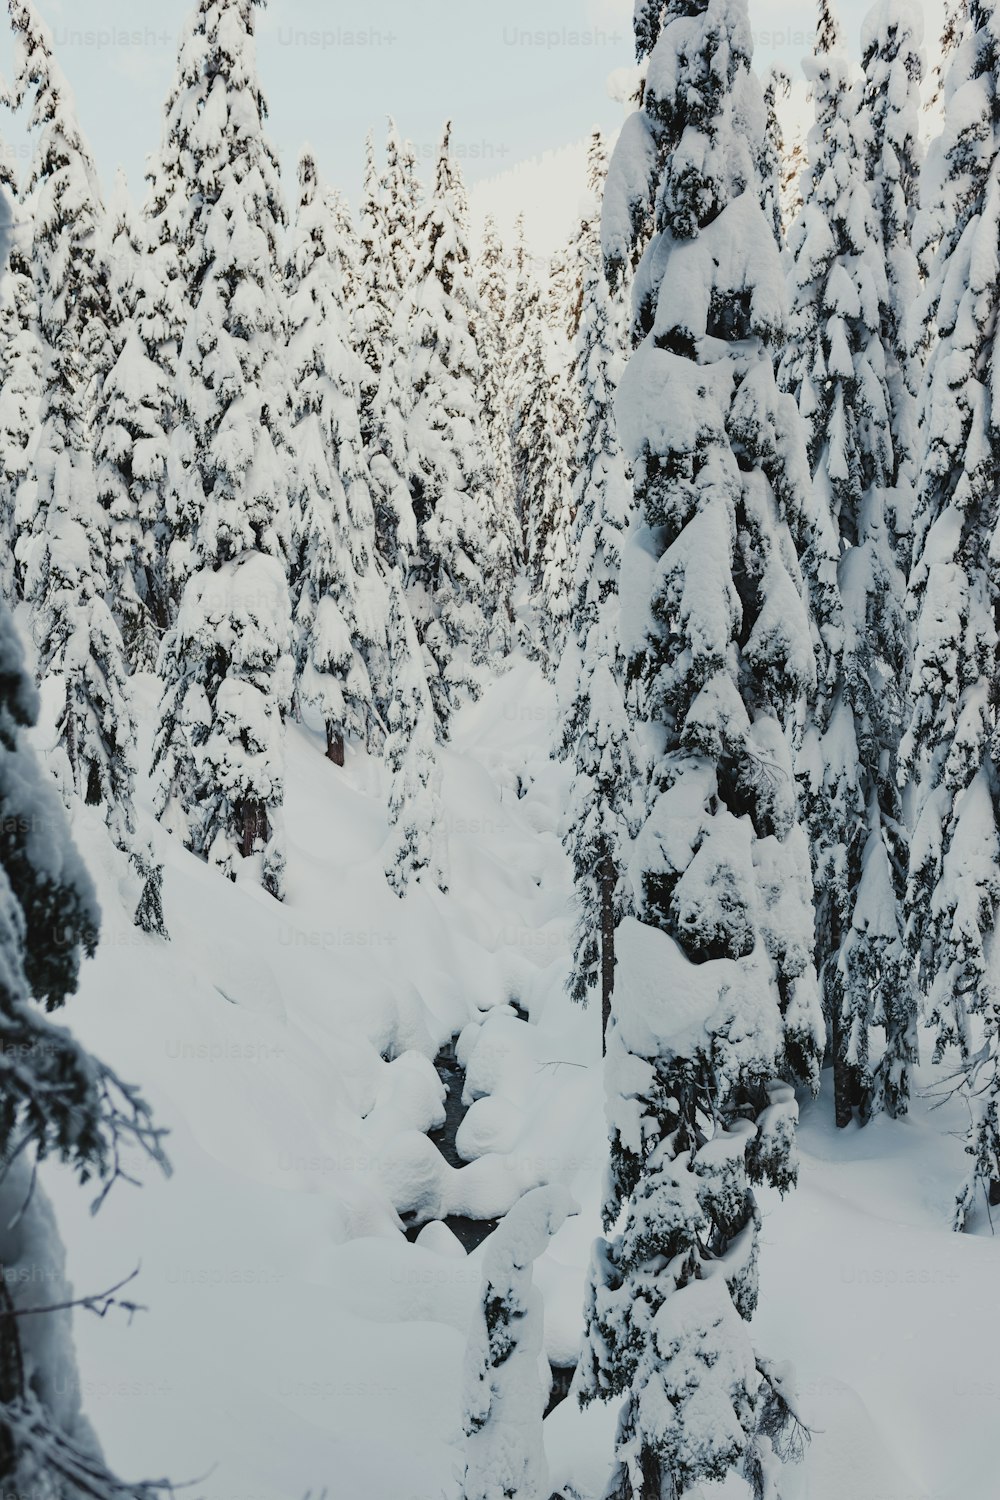 Une personne sur des skis au milieu d’une forêt enneigée